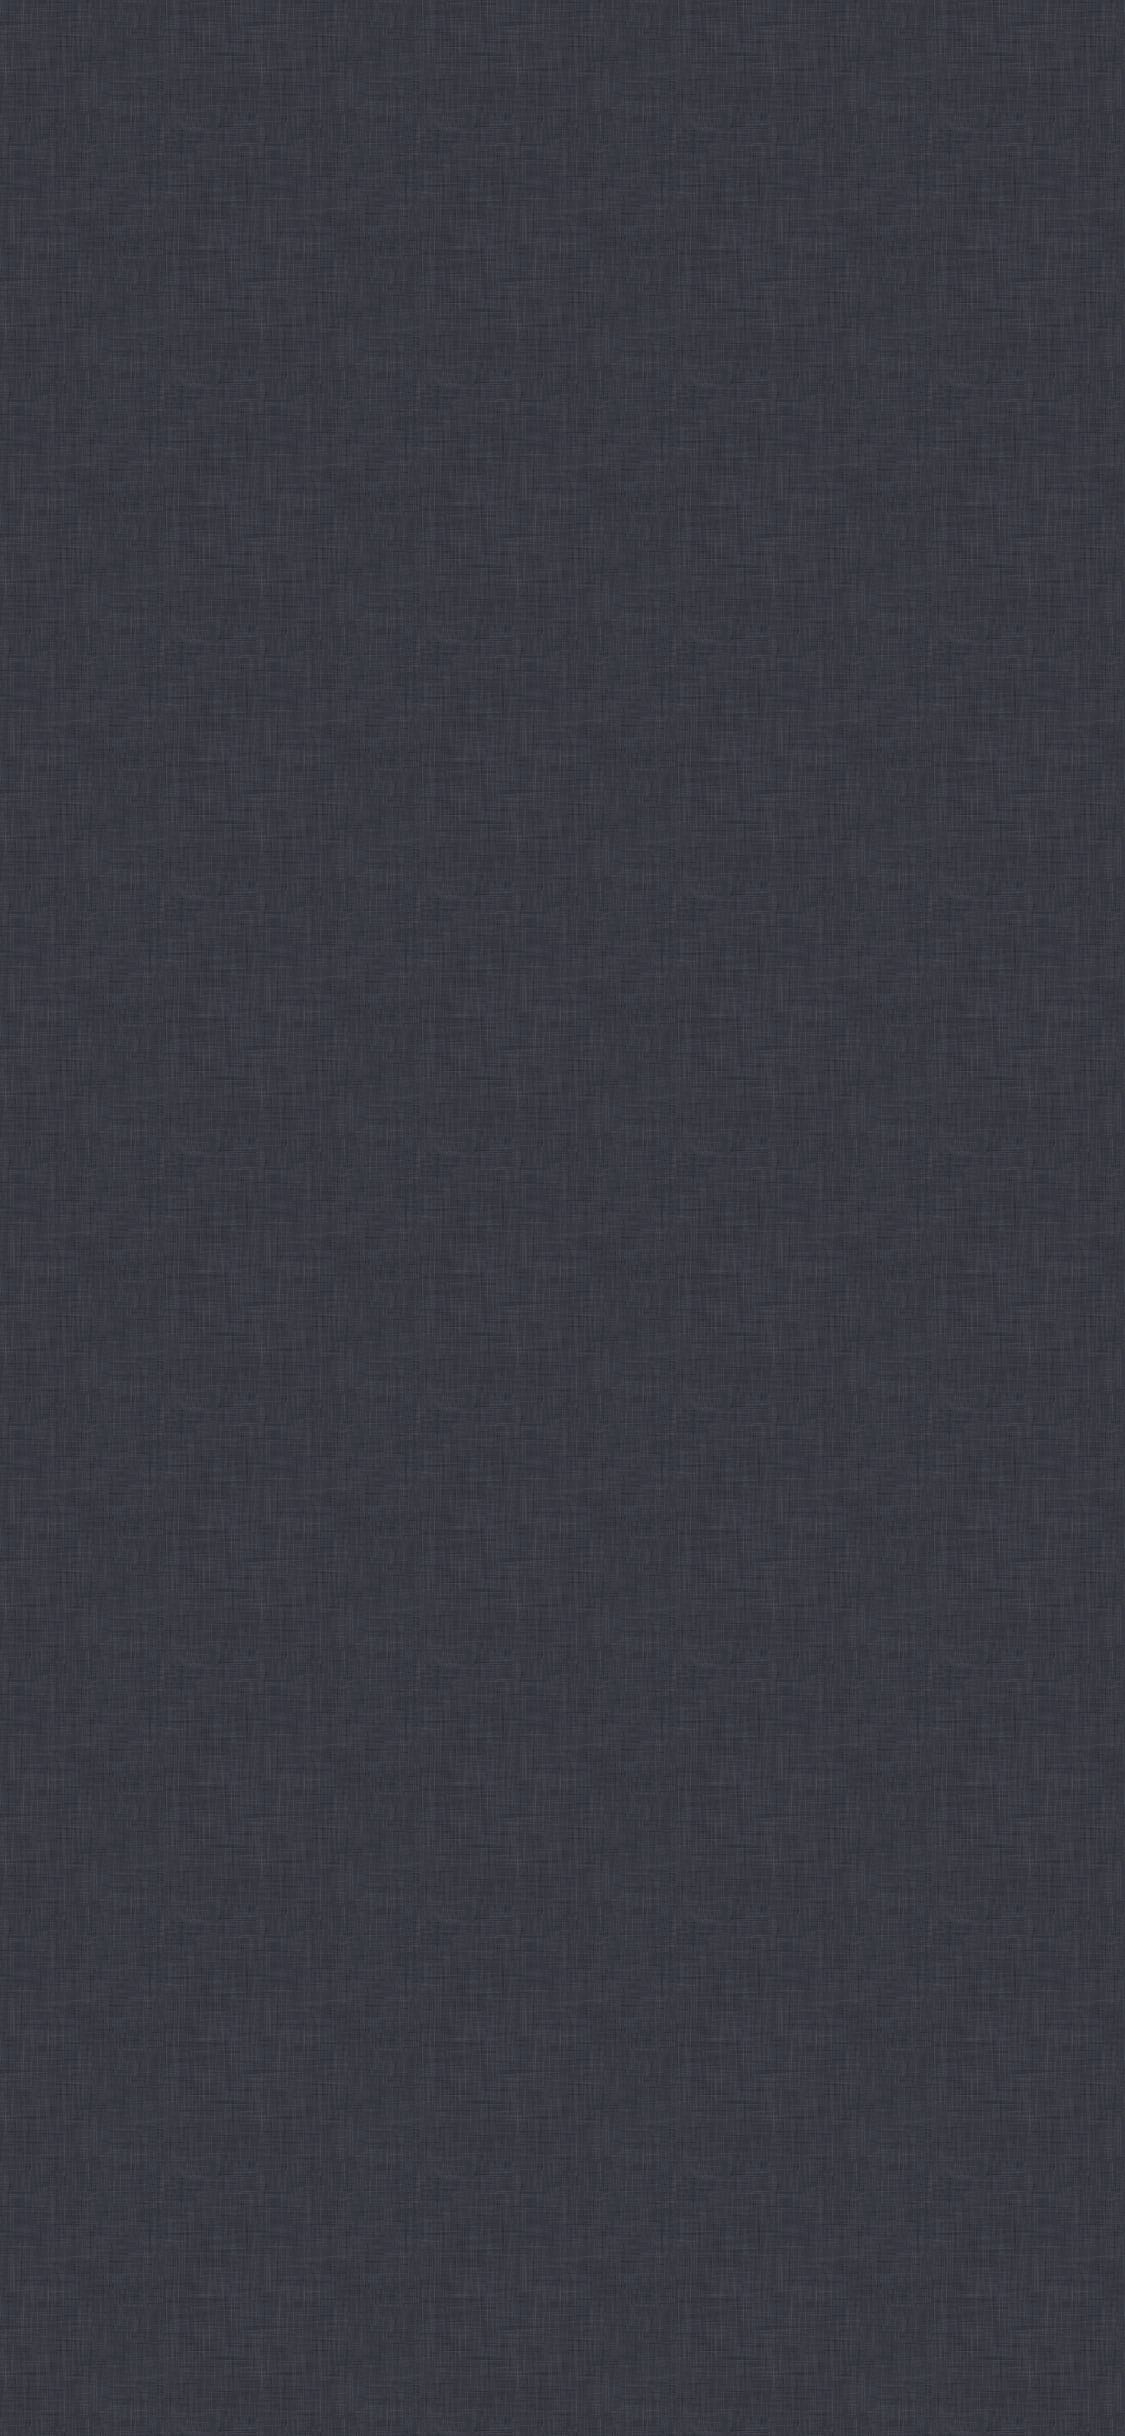 Dark Grey Iphone Wallpapers - Top Free Dark Grey Iphone Backgrounds